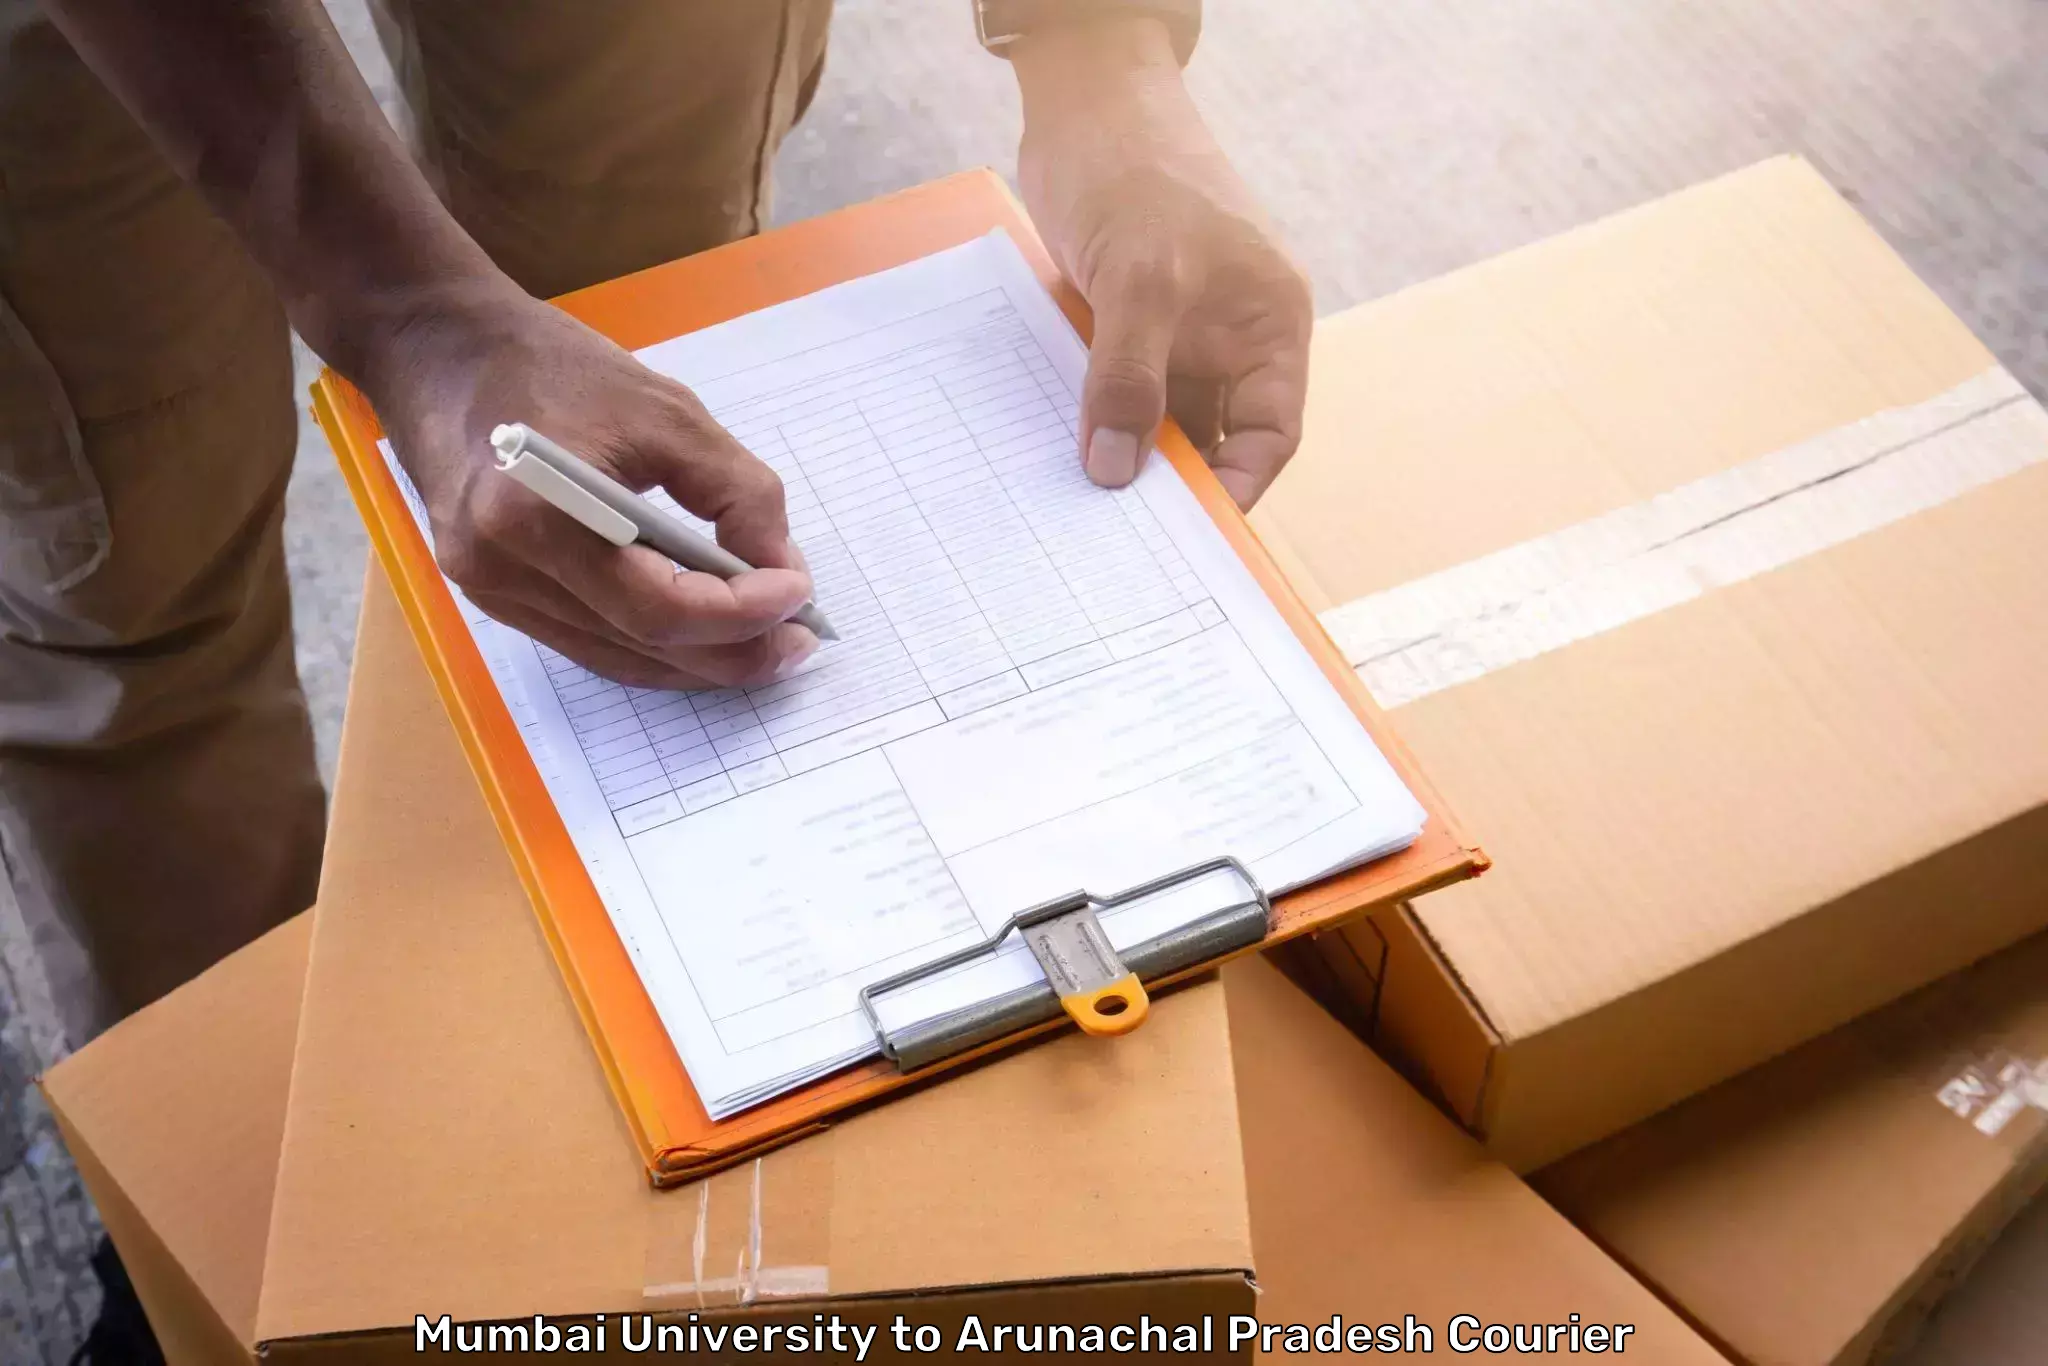 Luggage shipment specialists Mumbai University to Longding